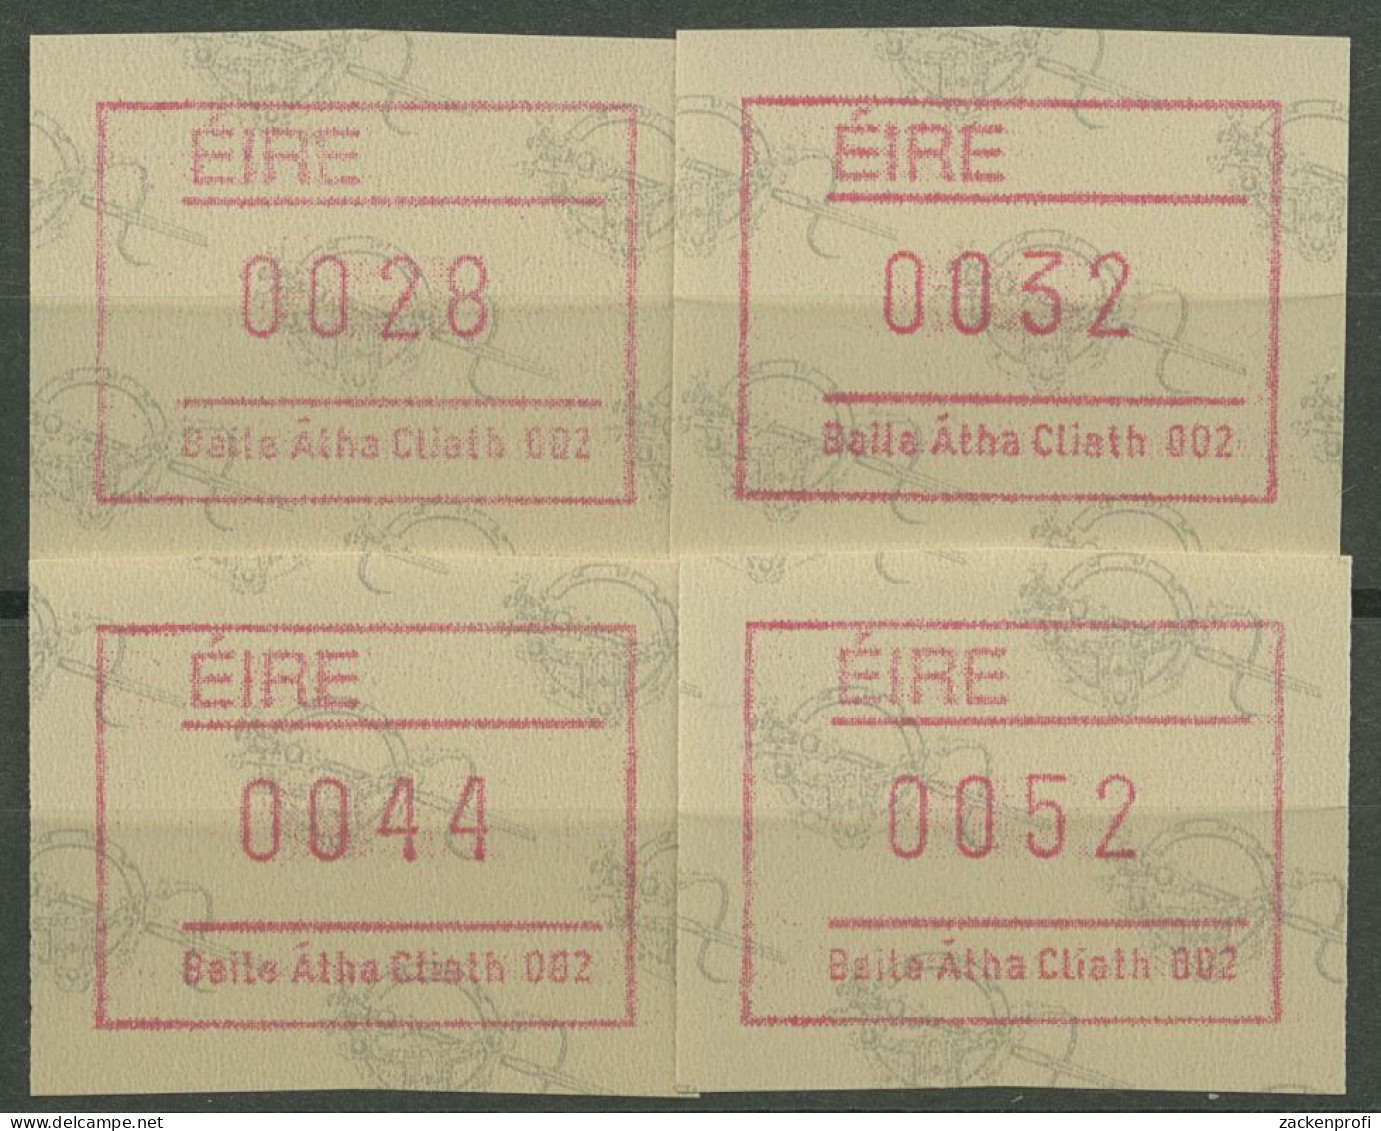 Irland Automatenmarken 1992 Satz 4 Werte Automat 002 ATM 4.2 S2 Postfrisch - Viñetas De Franqueo (Frama)